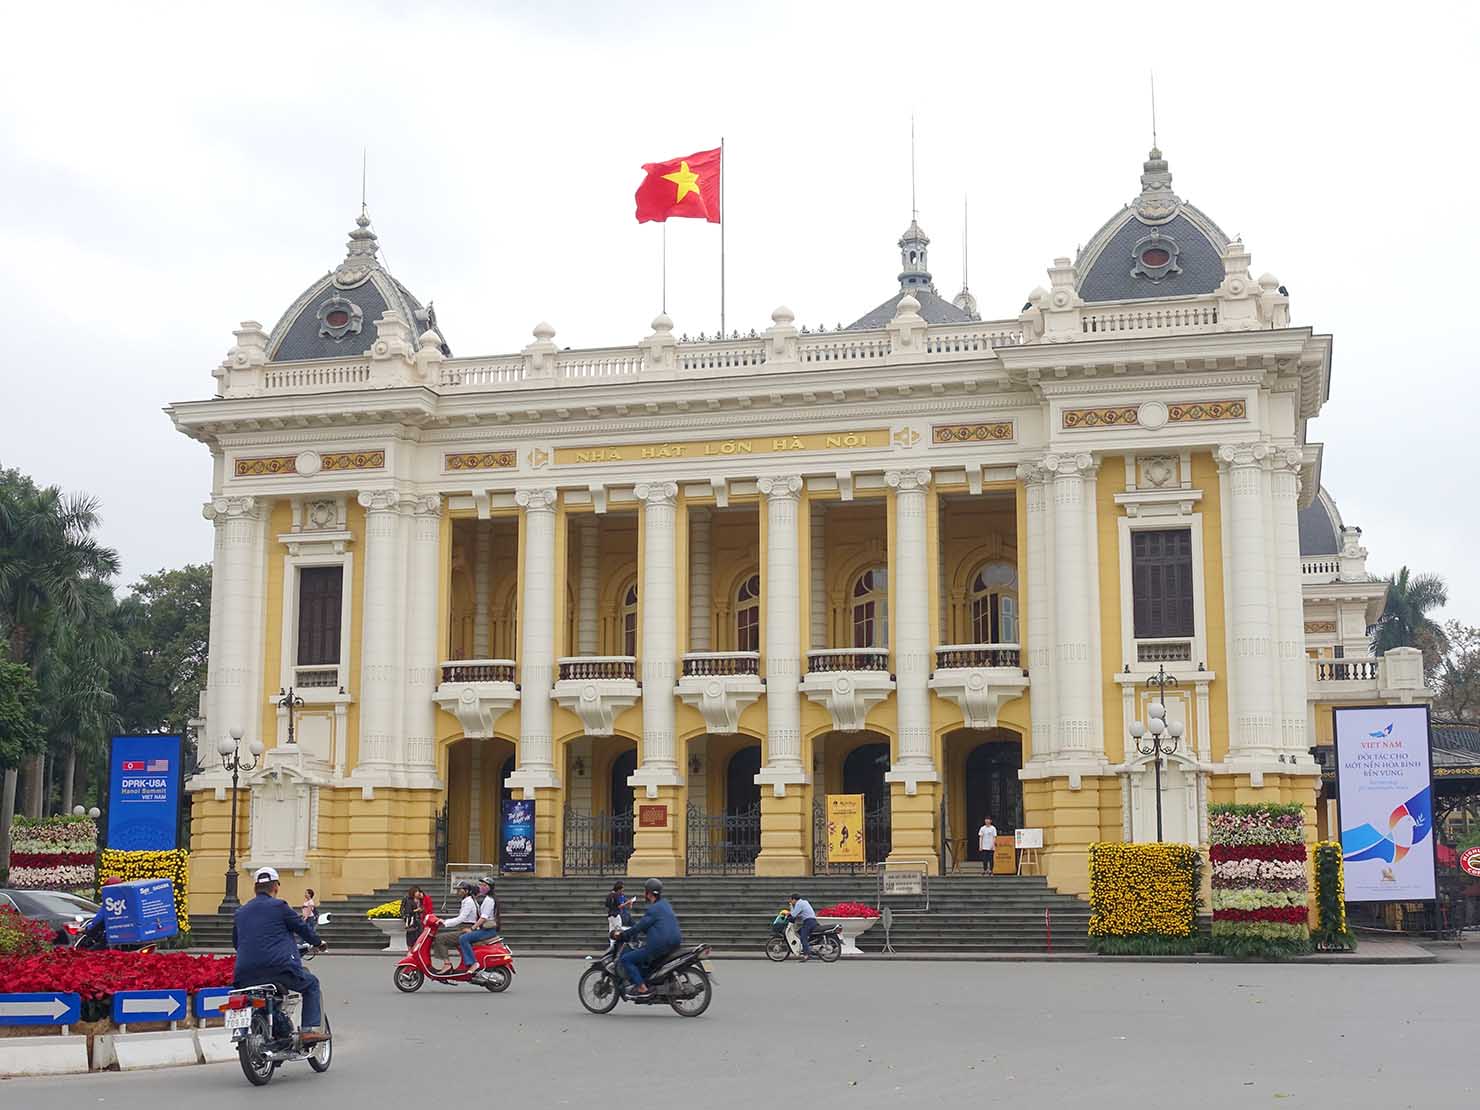 ベトナム・ハノイ旧市街の観光スポット「オペラハウス」の外観